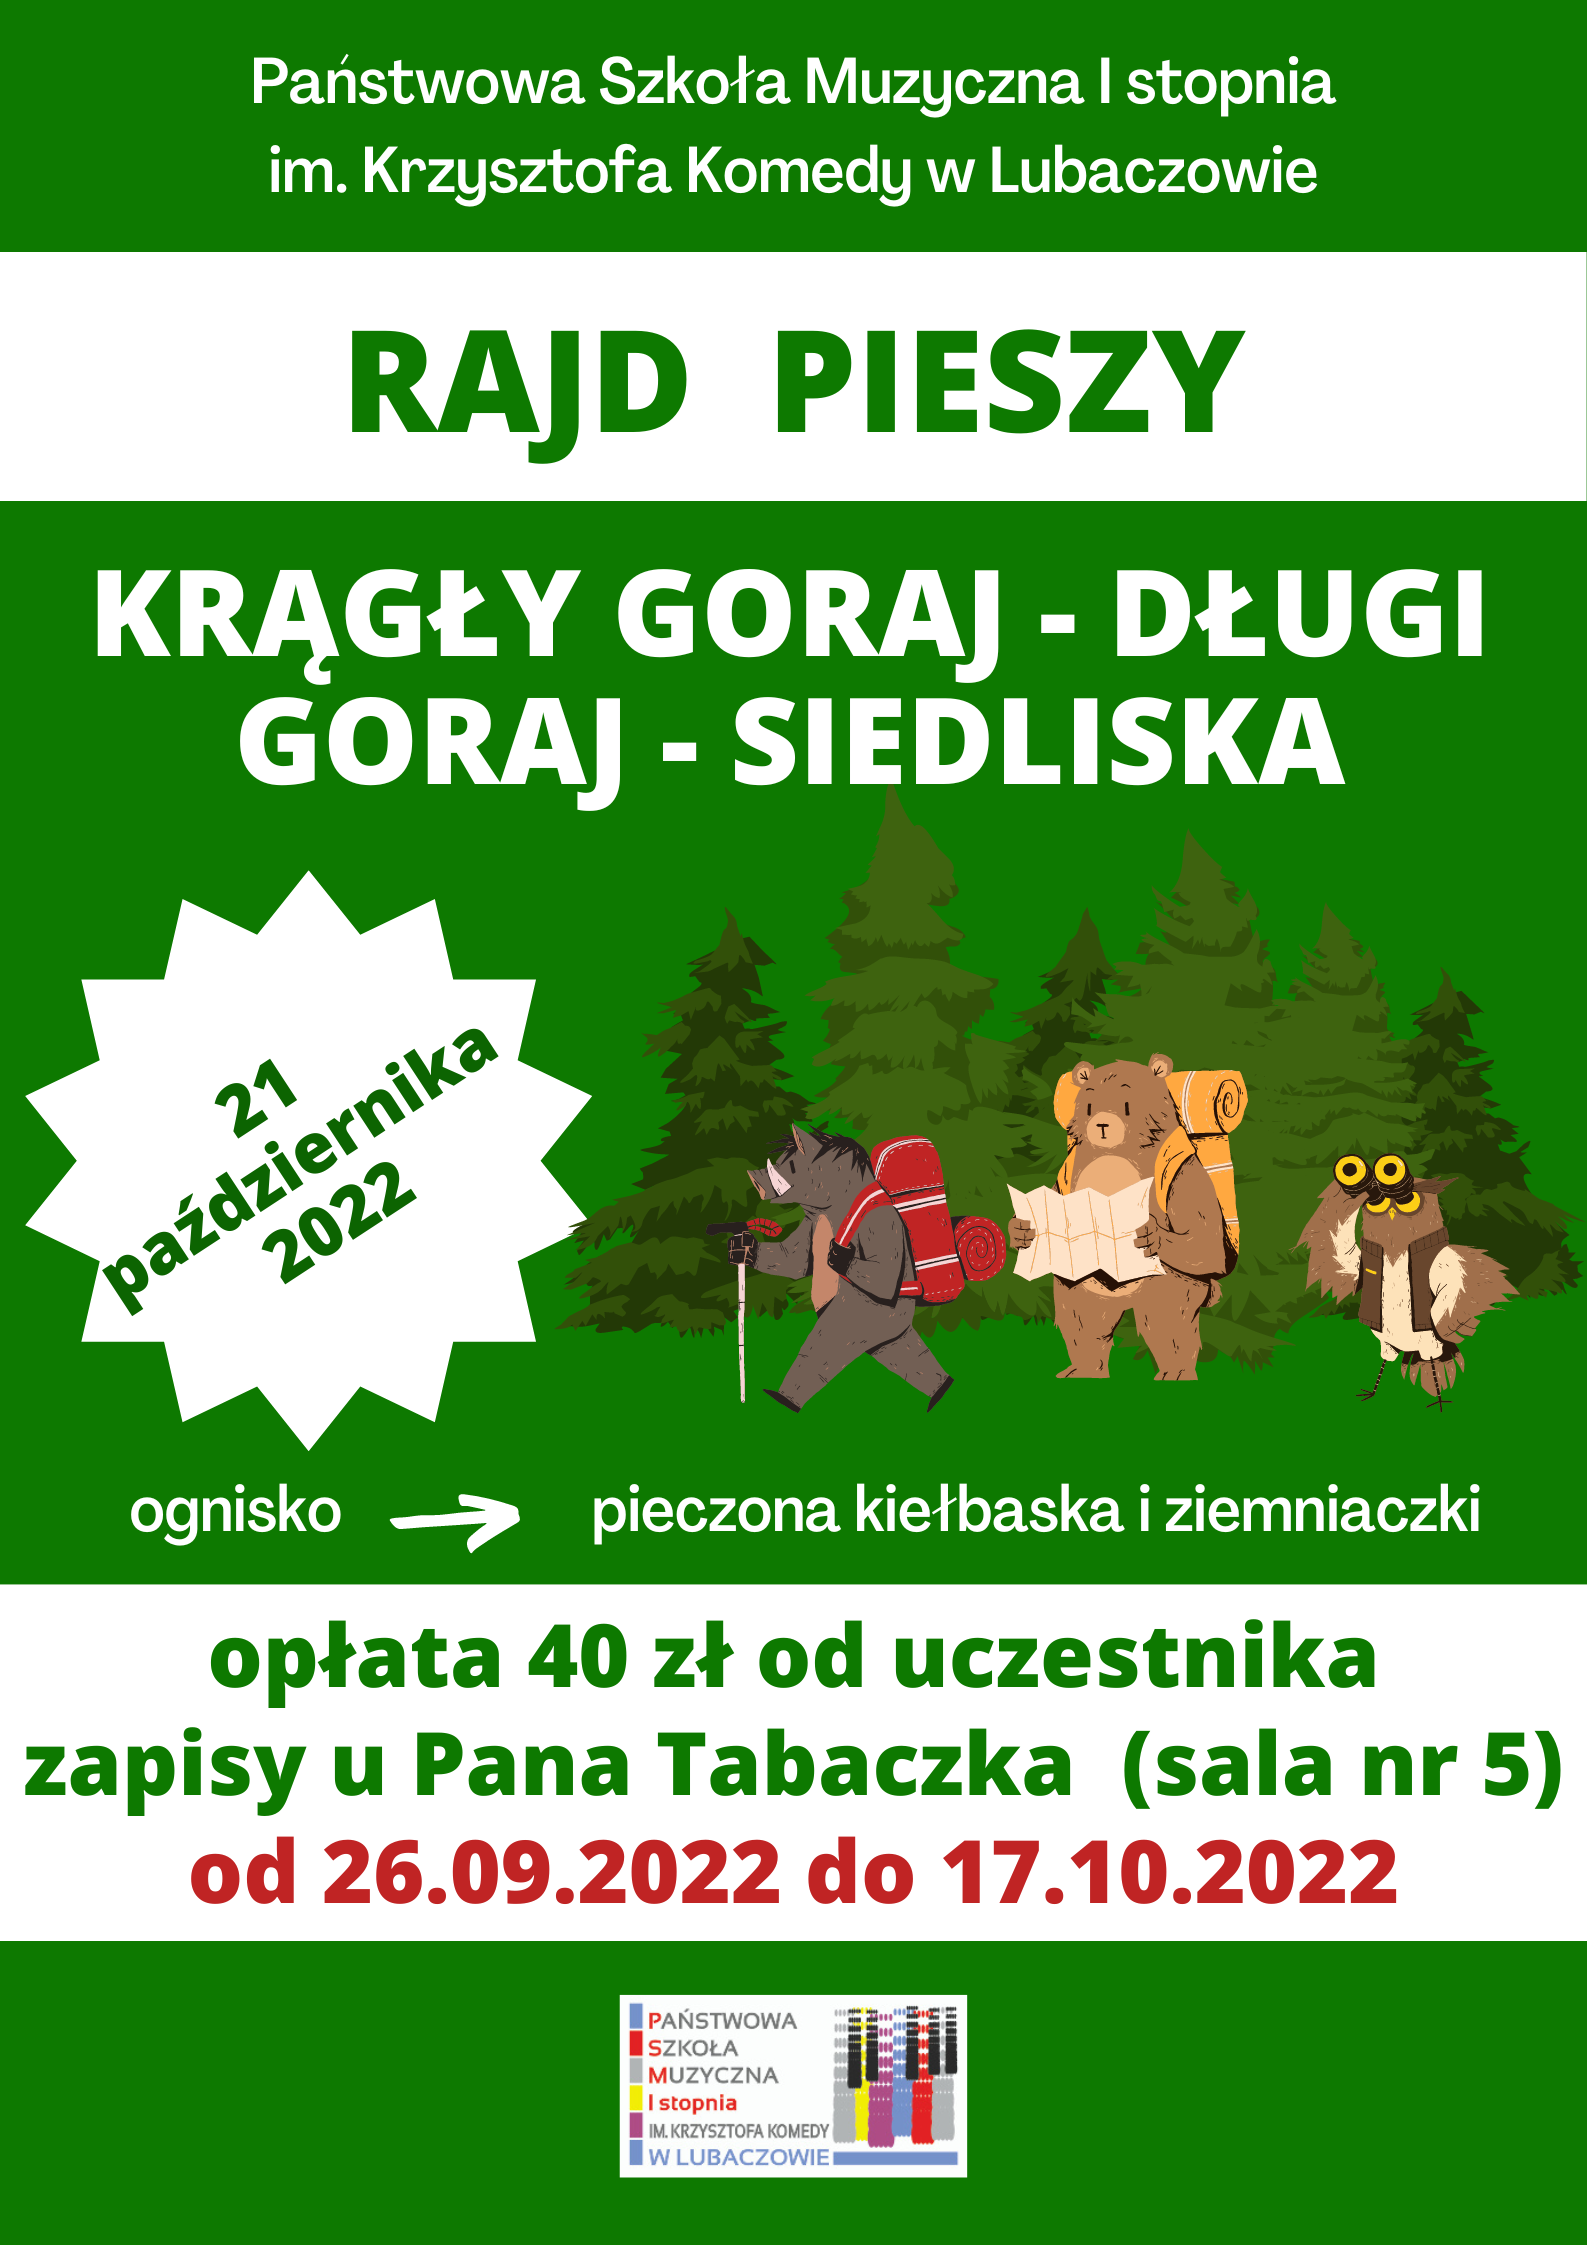 Zielony plakat z ikonografią zwierząt wędrujących po lesie i informacją o organizacji rajdu pieszego w dniu 21 października 2022 r.